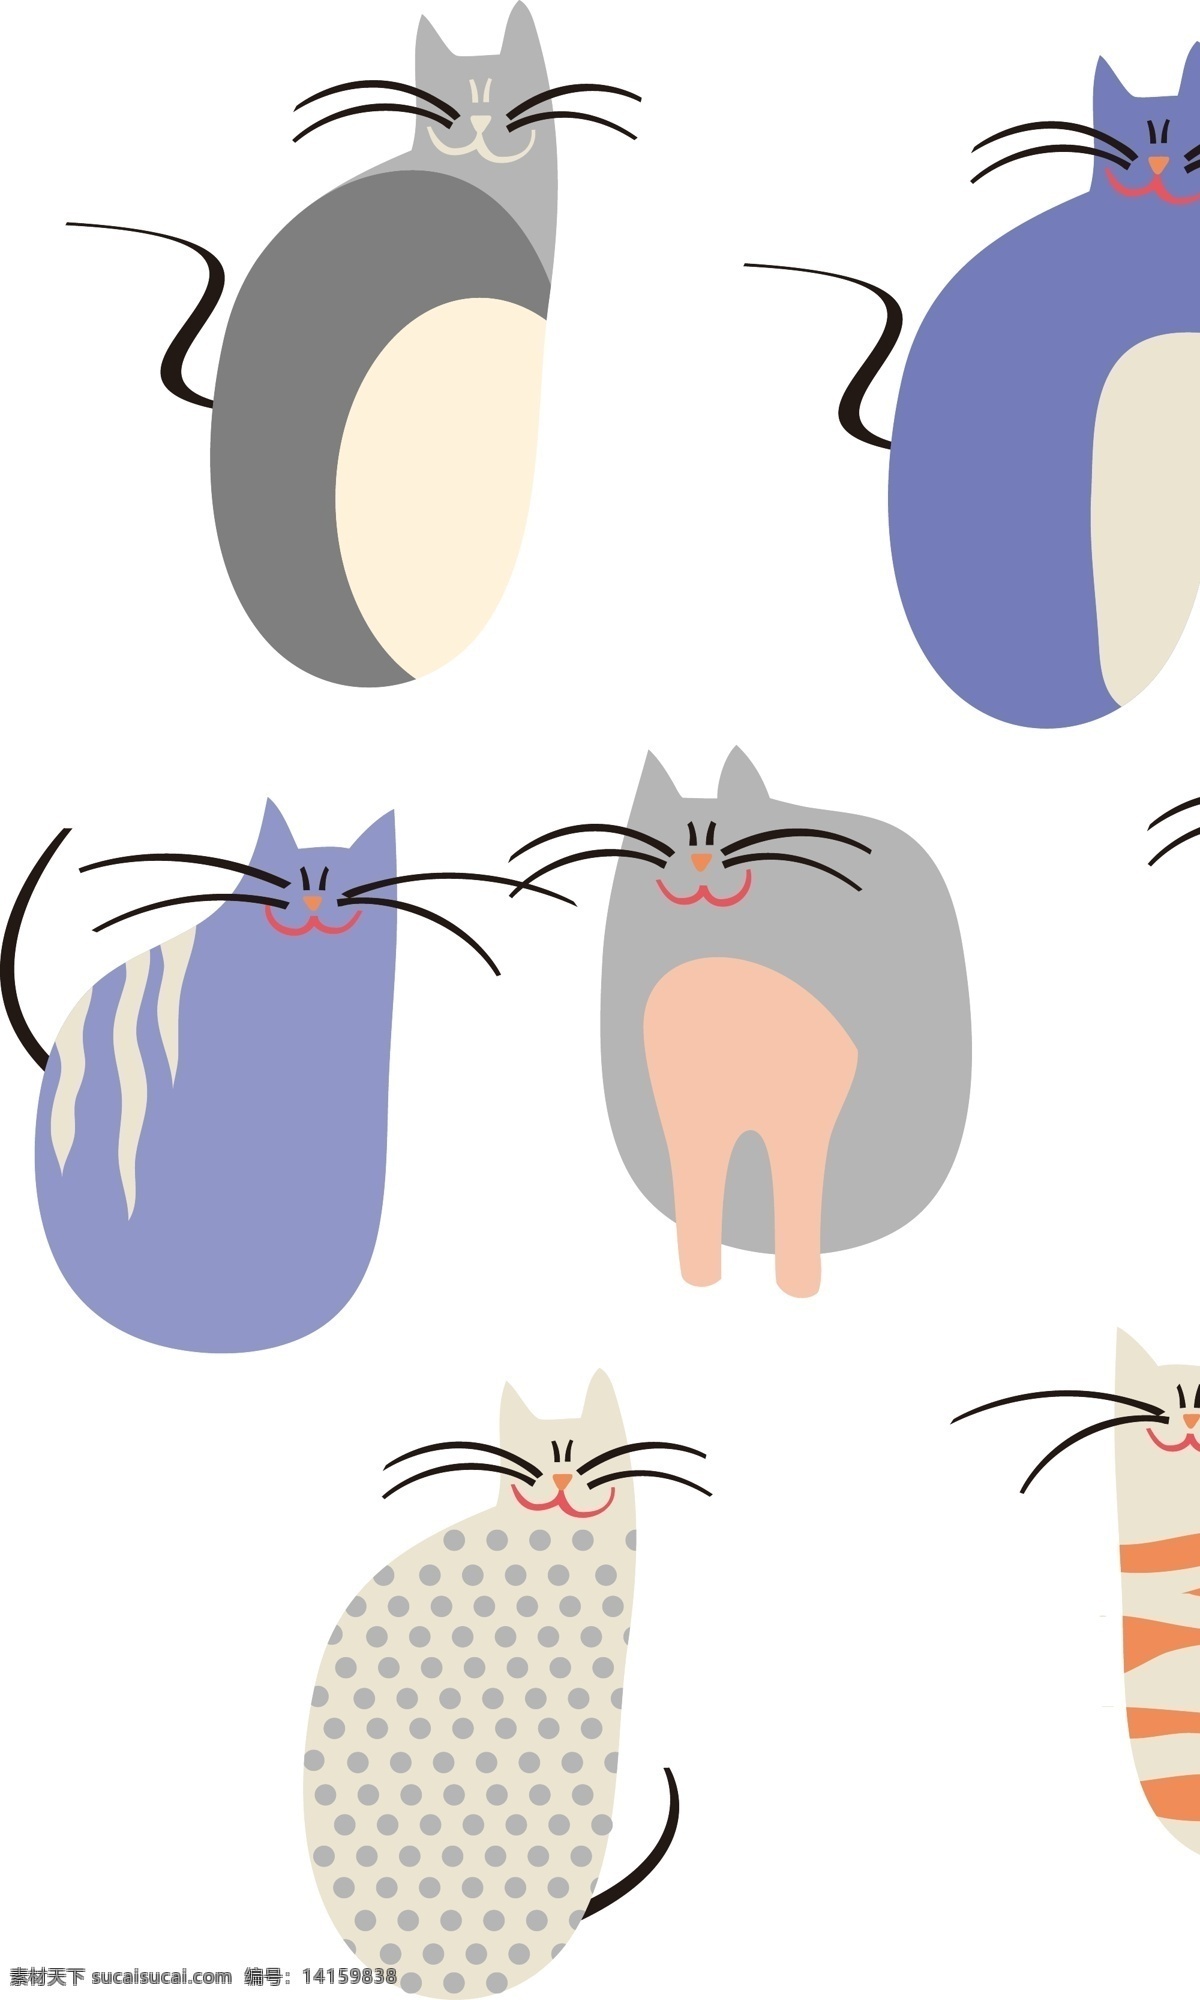 矢量素材 矢量 卡通素材 卡通 卡通猫咪 可爱 猫咪 小猫 动物 猫 宠物 矢量猫咪 卡通通过小猫 矢量小猫 手绘小猫 简笔画 线条 手绘 平面 抽象猫咪 抽象